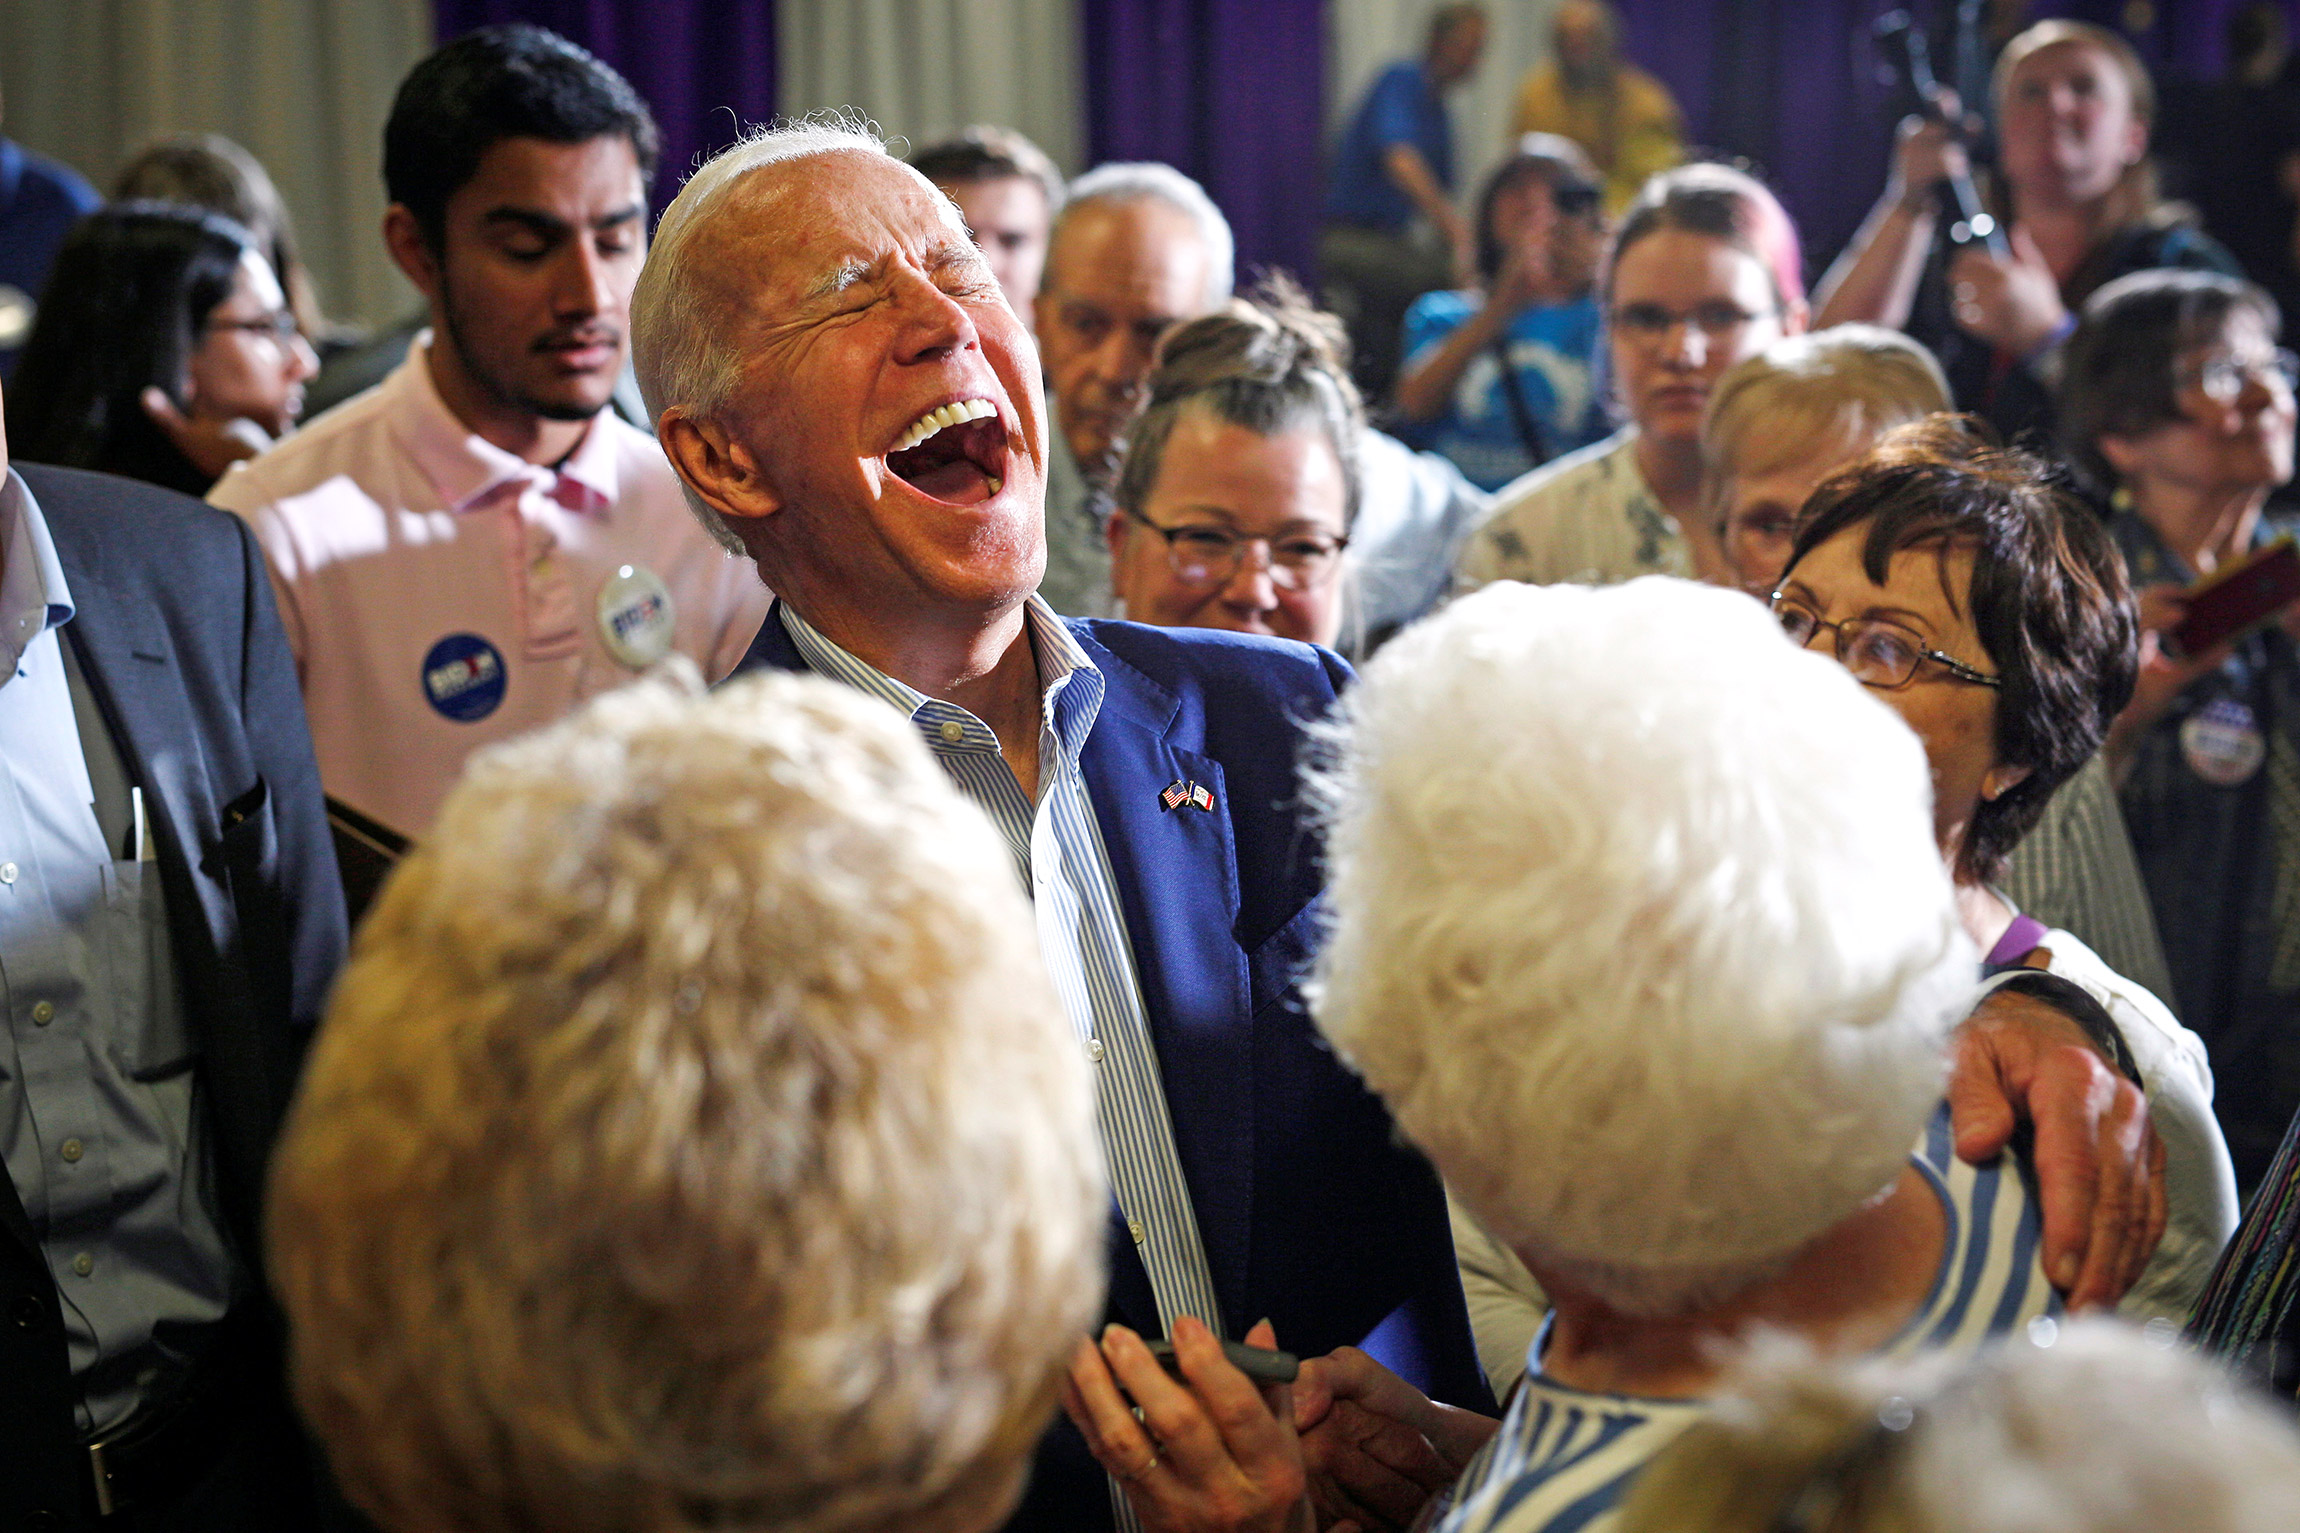 Кандидат в президенты США от демократов и бывший вице-президент Джо Байден во время встречи со своими сторонниками в Университете Айова Уэслиан, 11 июня 2019 года. Маунт-Плезант, штат Айова, США
